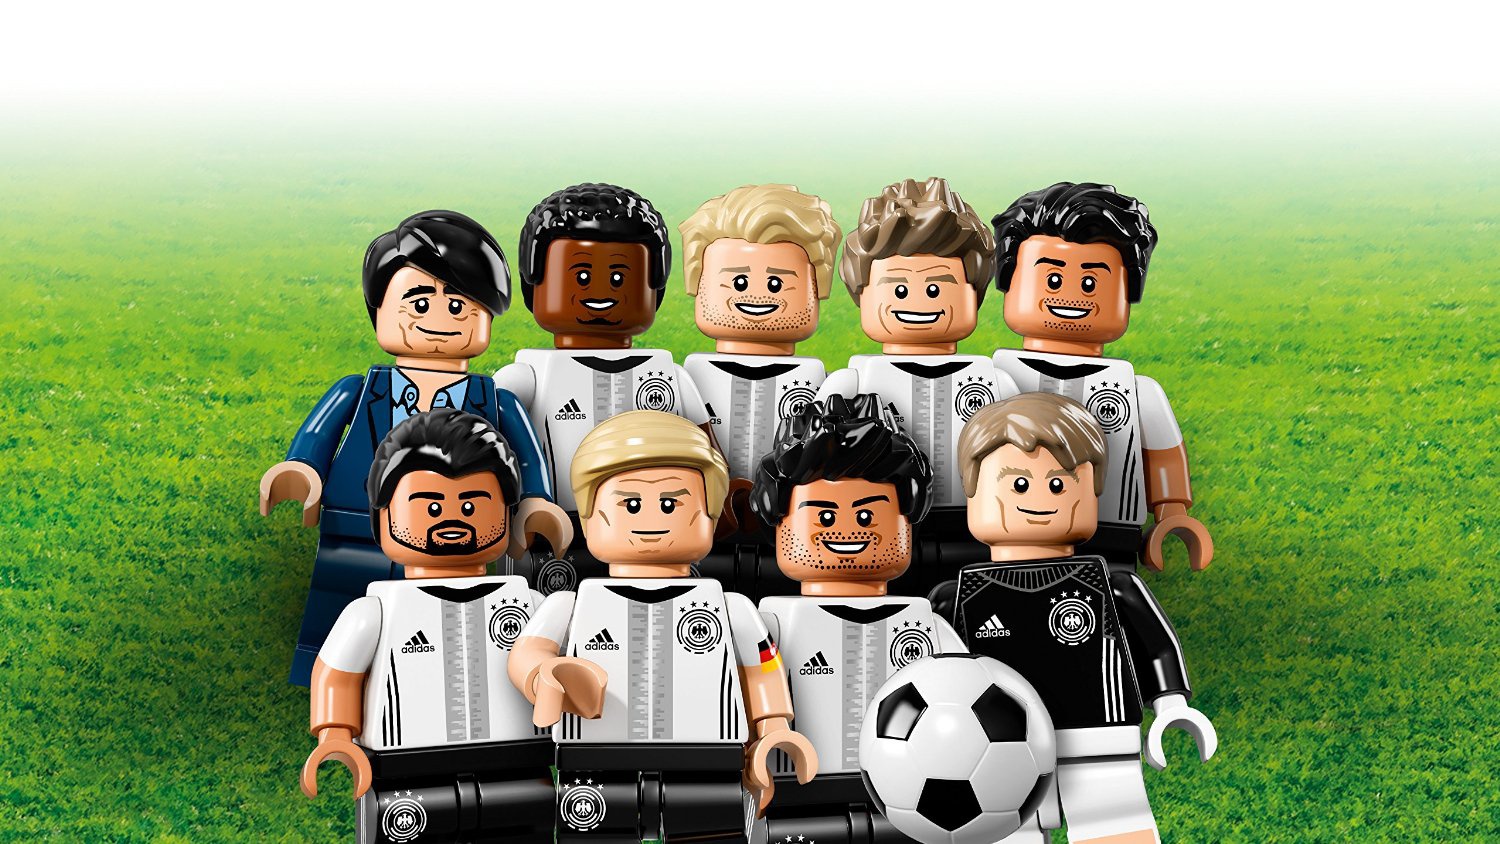 Лего Минифигурки Сборная Германии по футболу 71014